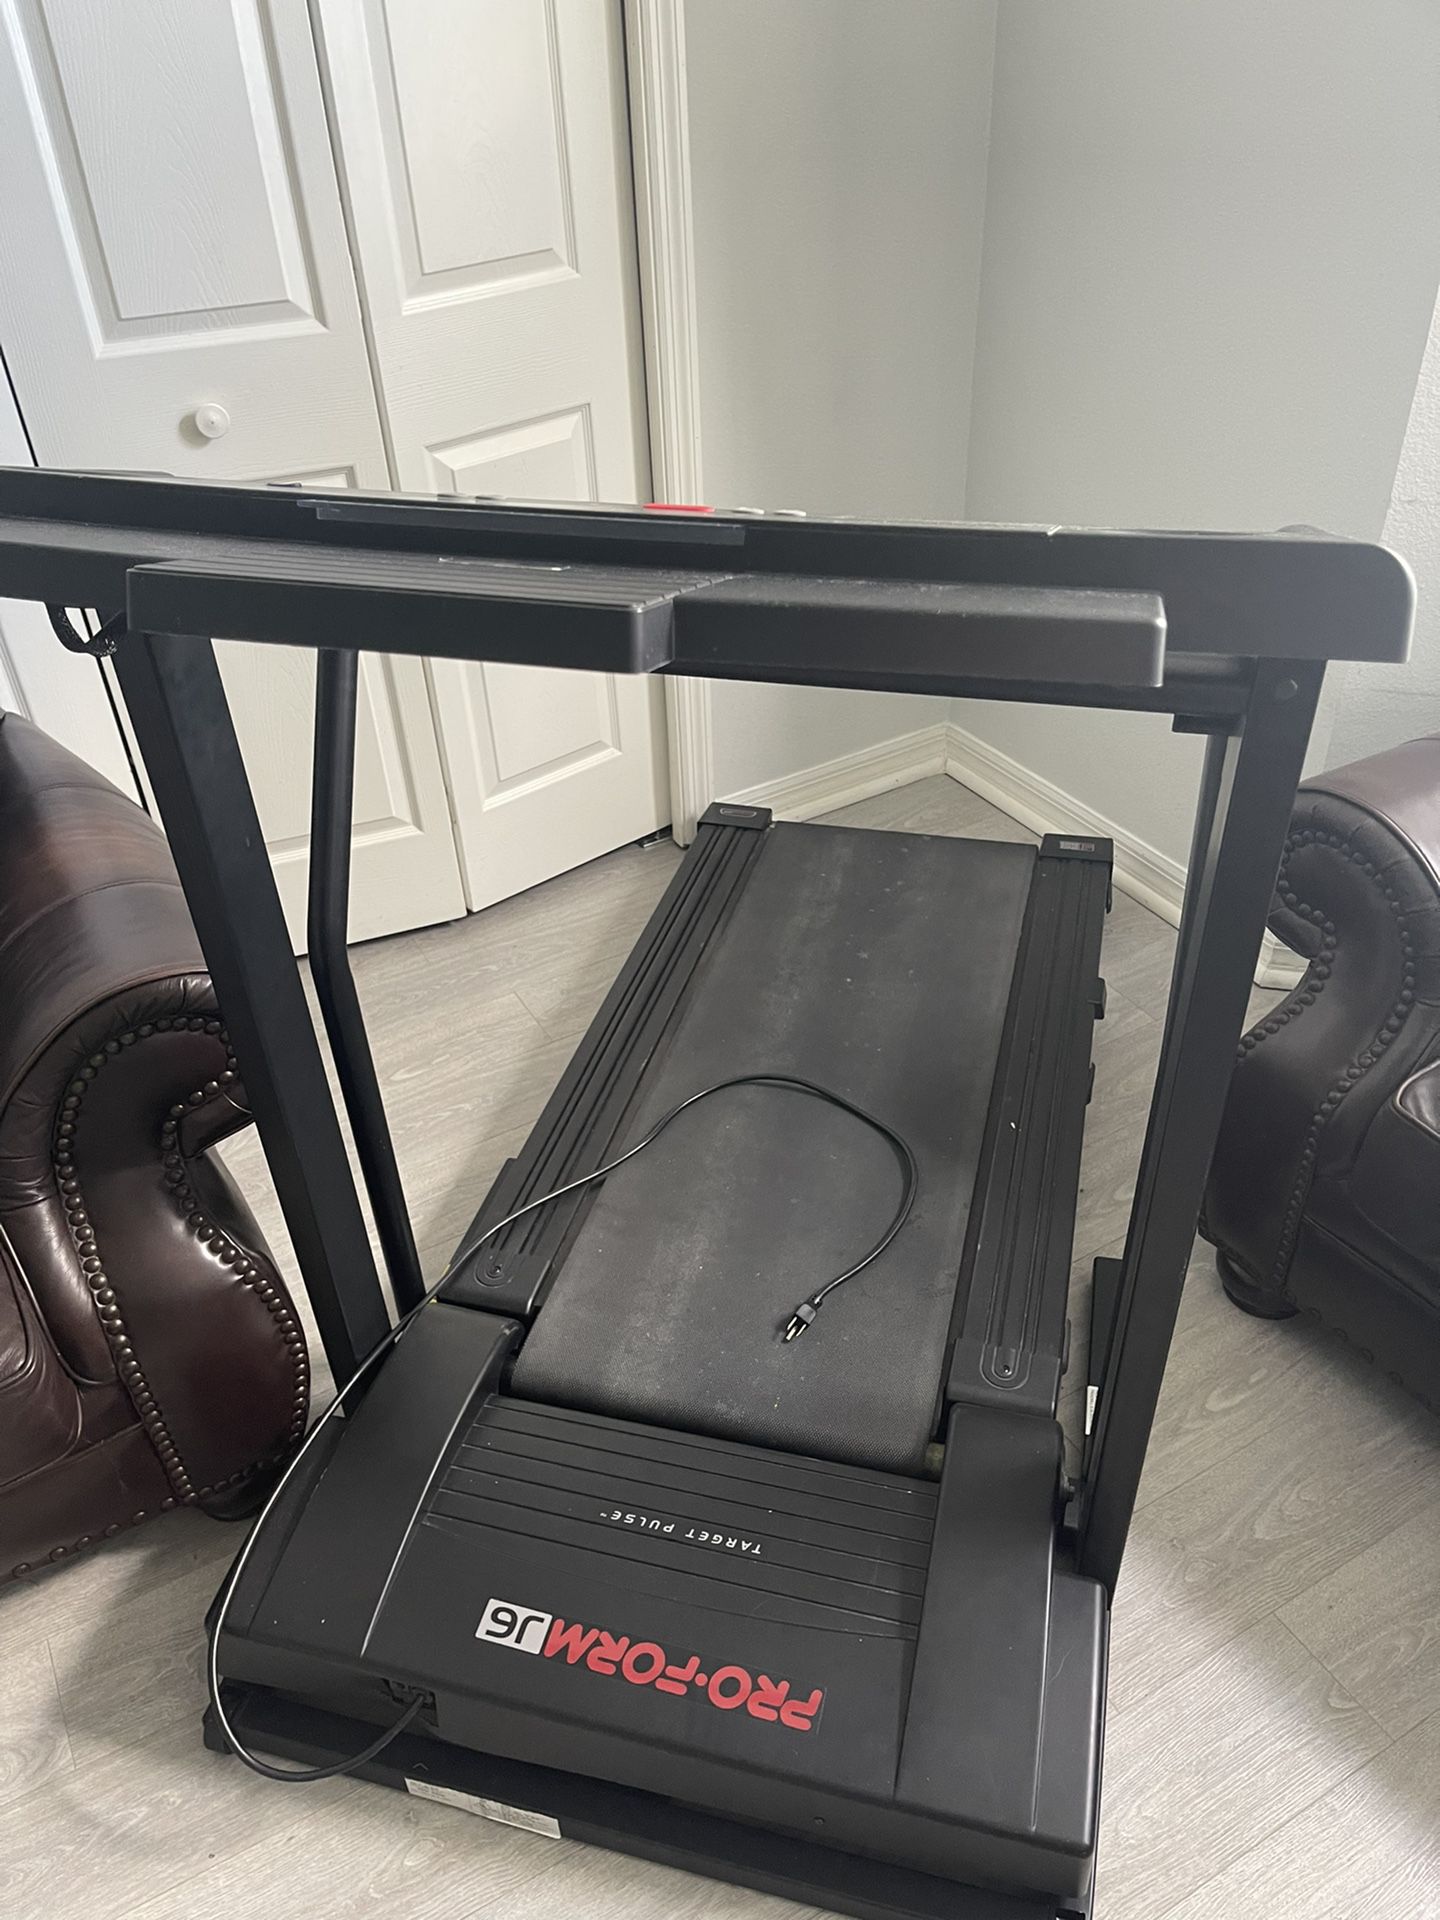 Treadmill Pro-form j6